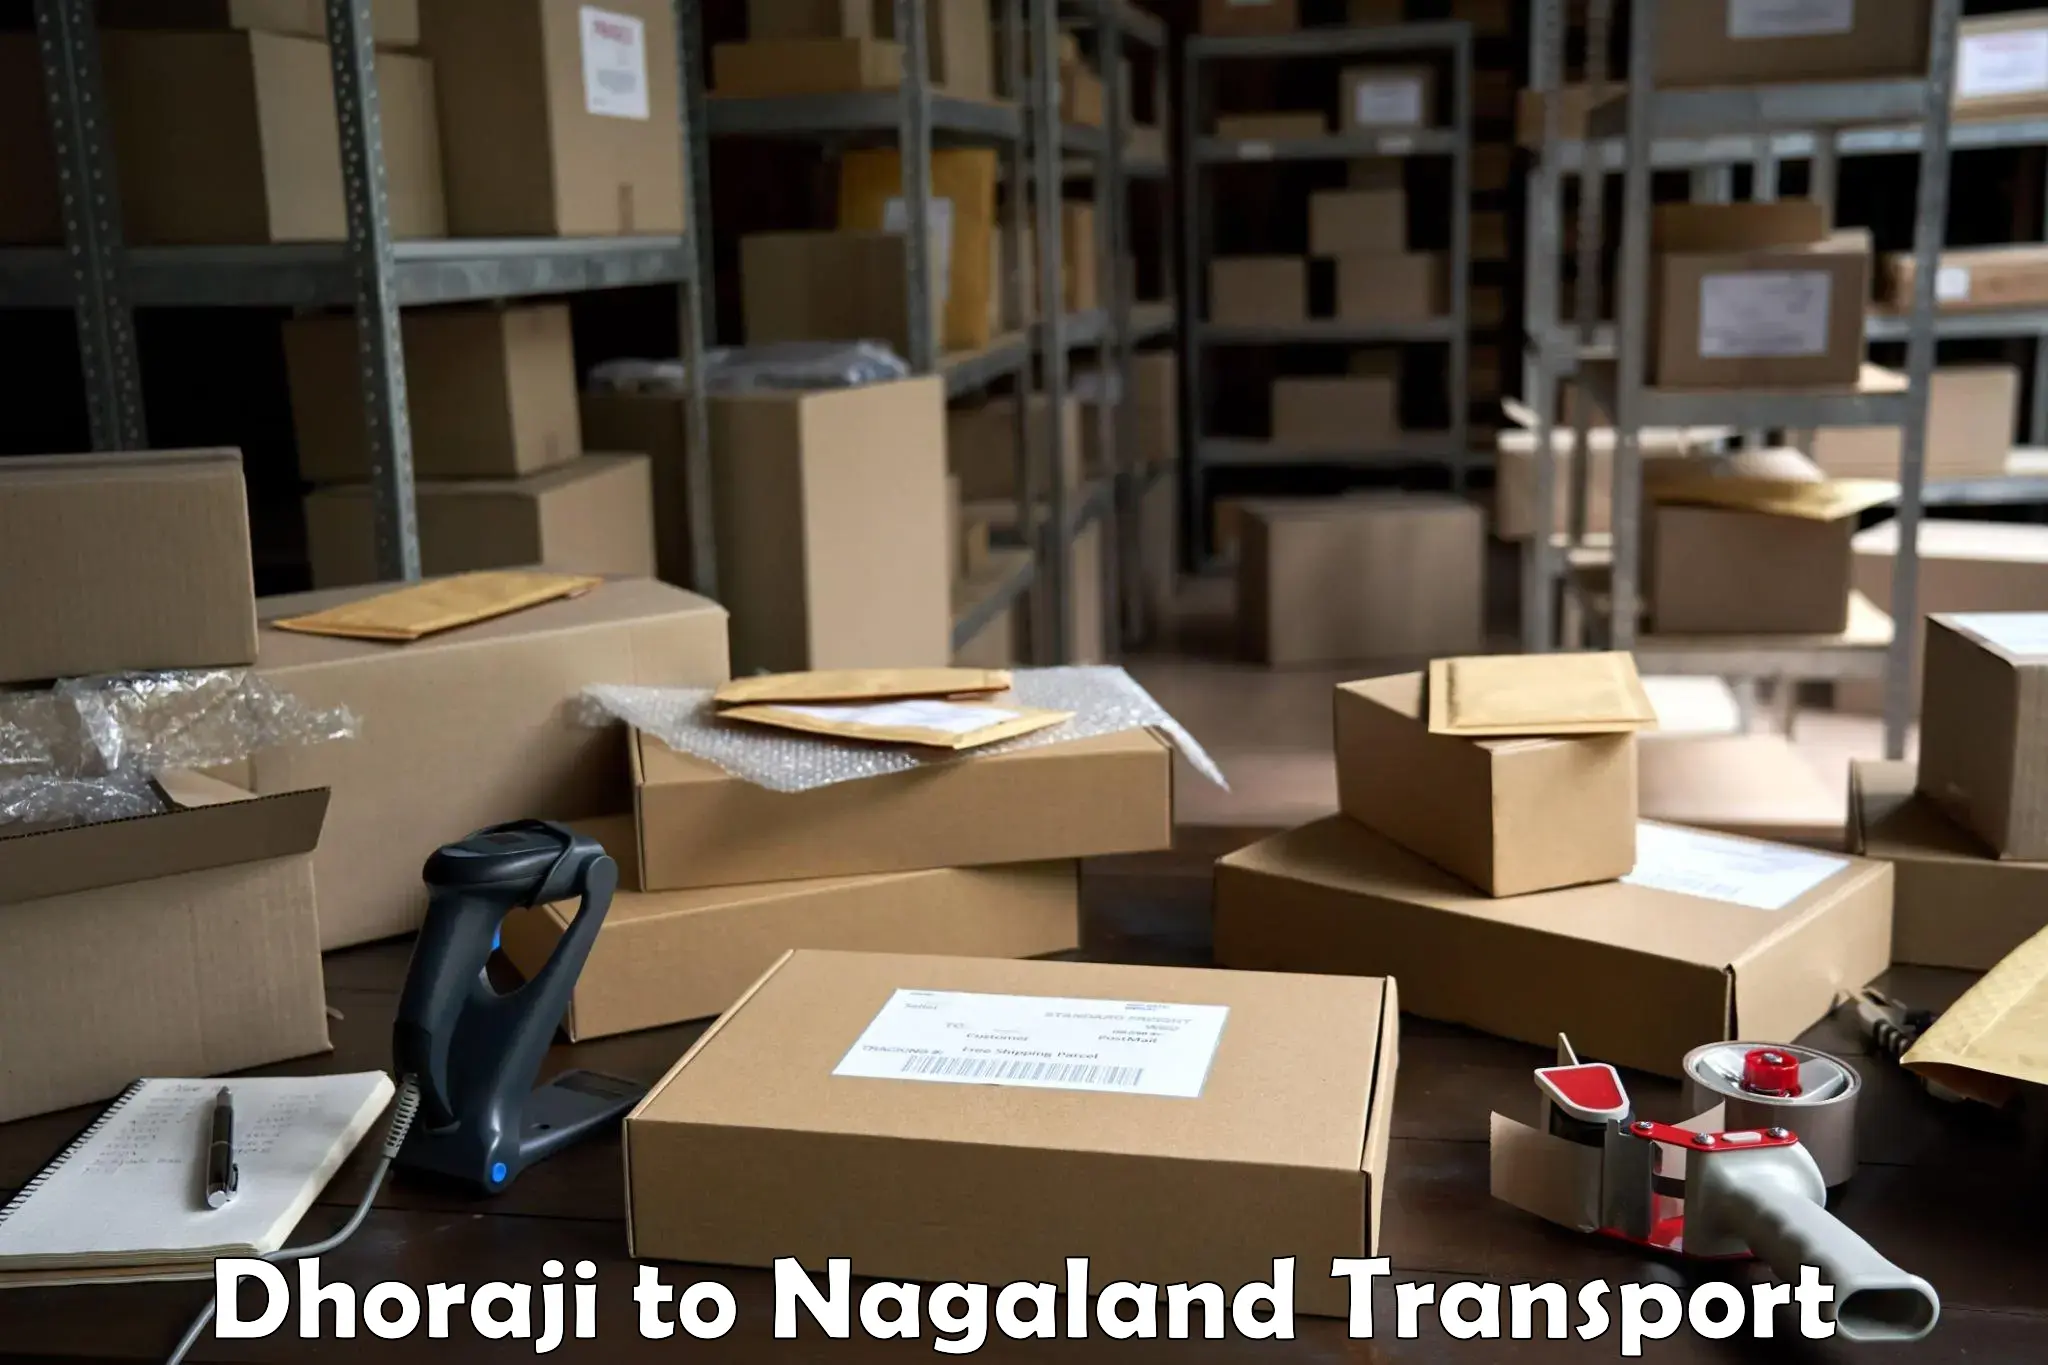 Commercial transport service Dhoraji to NIT Nagaland